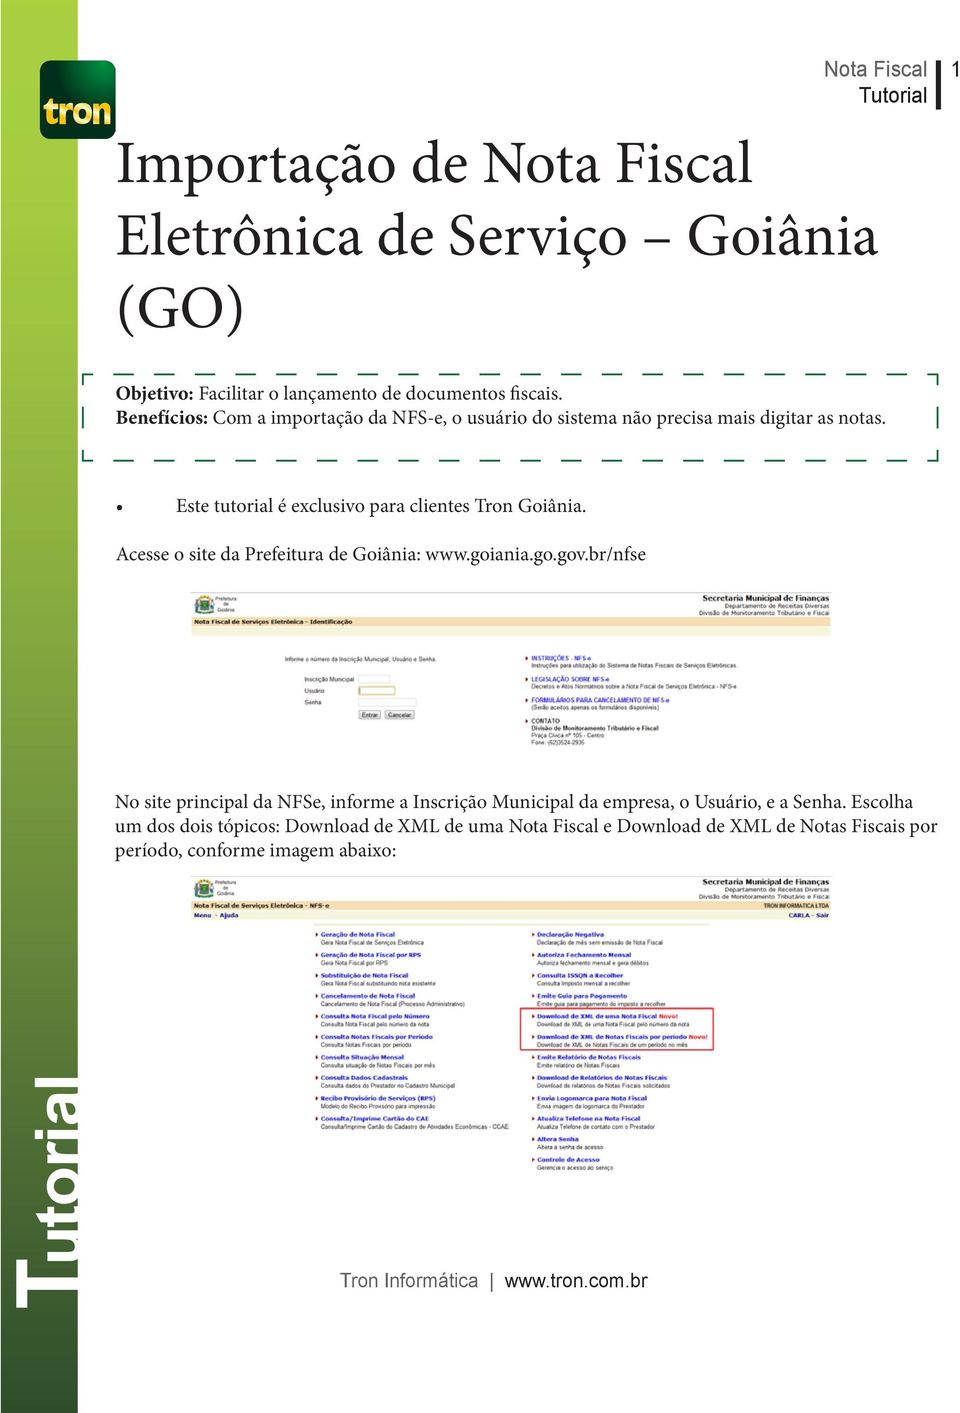 Este tutorial é exclusivo para clientes Tron Goiânia. Acesse o site da Prefeitura de Goiânia: www.goiania.go.gov.